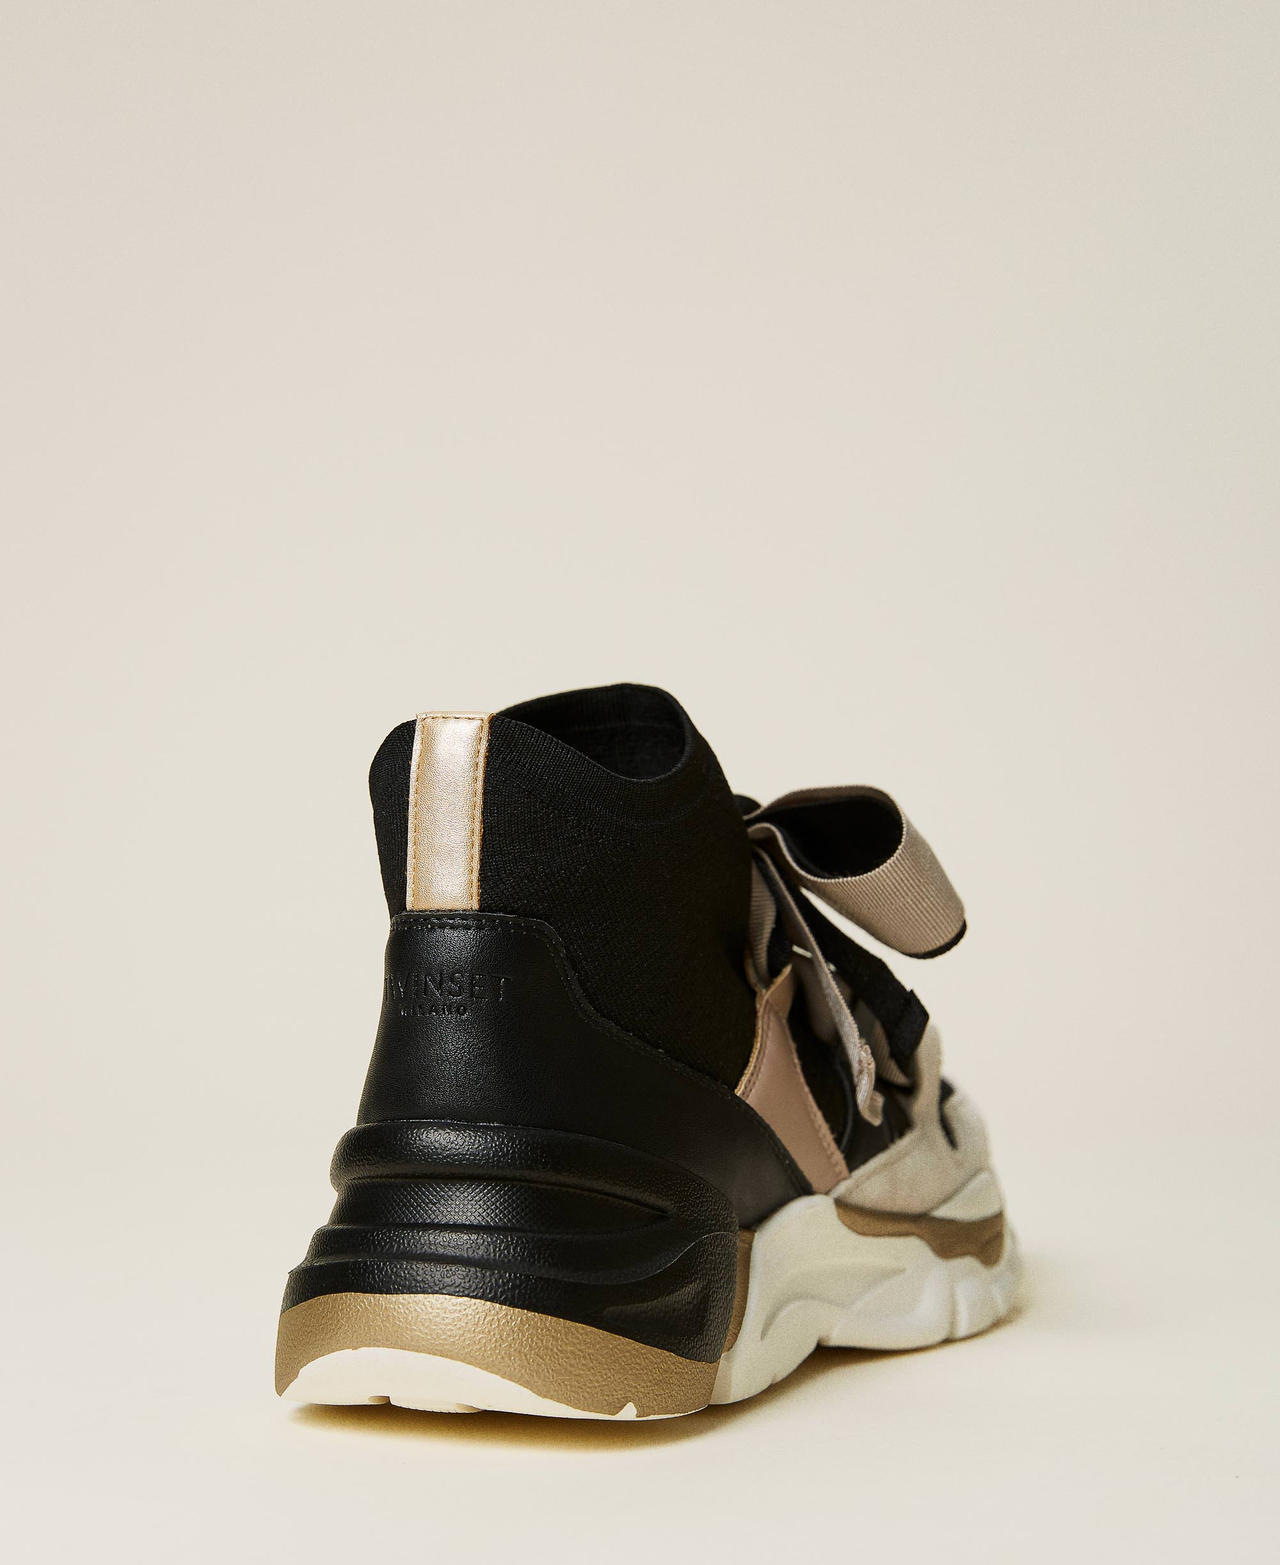 Sneakers in pelle con nastro Bicolor Nero / Beige "Creme Brulè" Donna 212TCT142-02